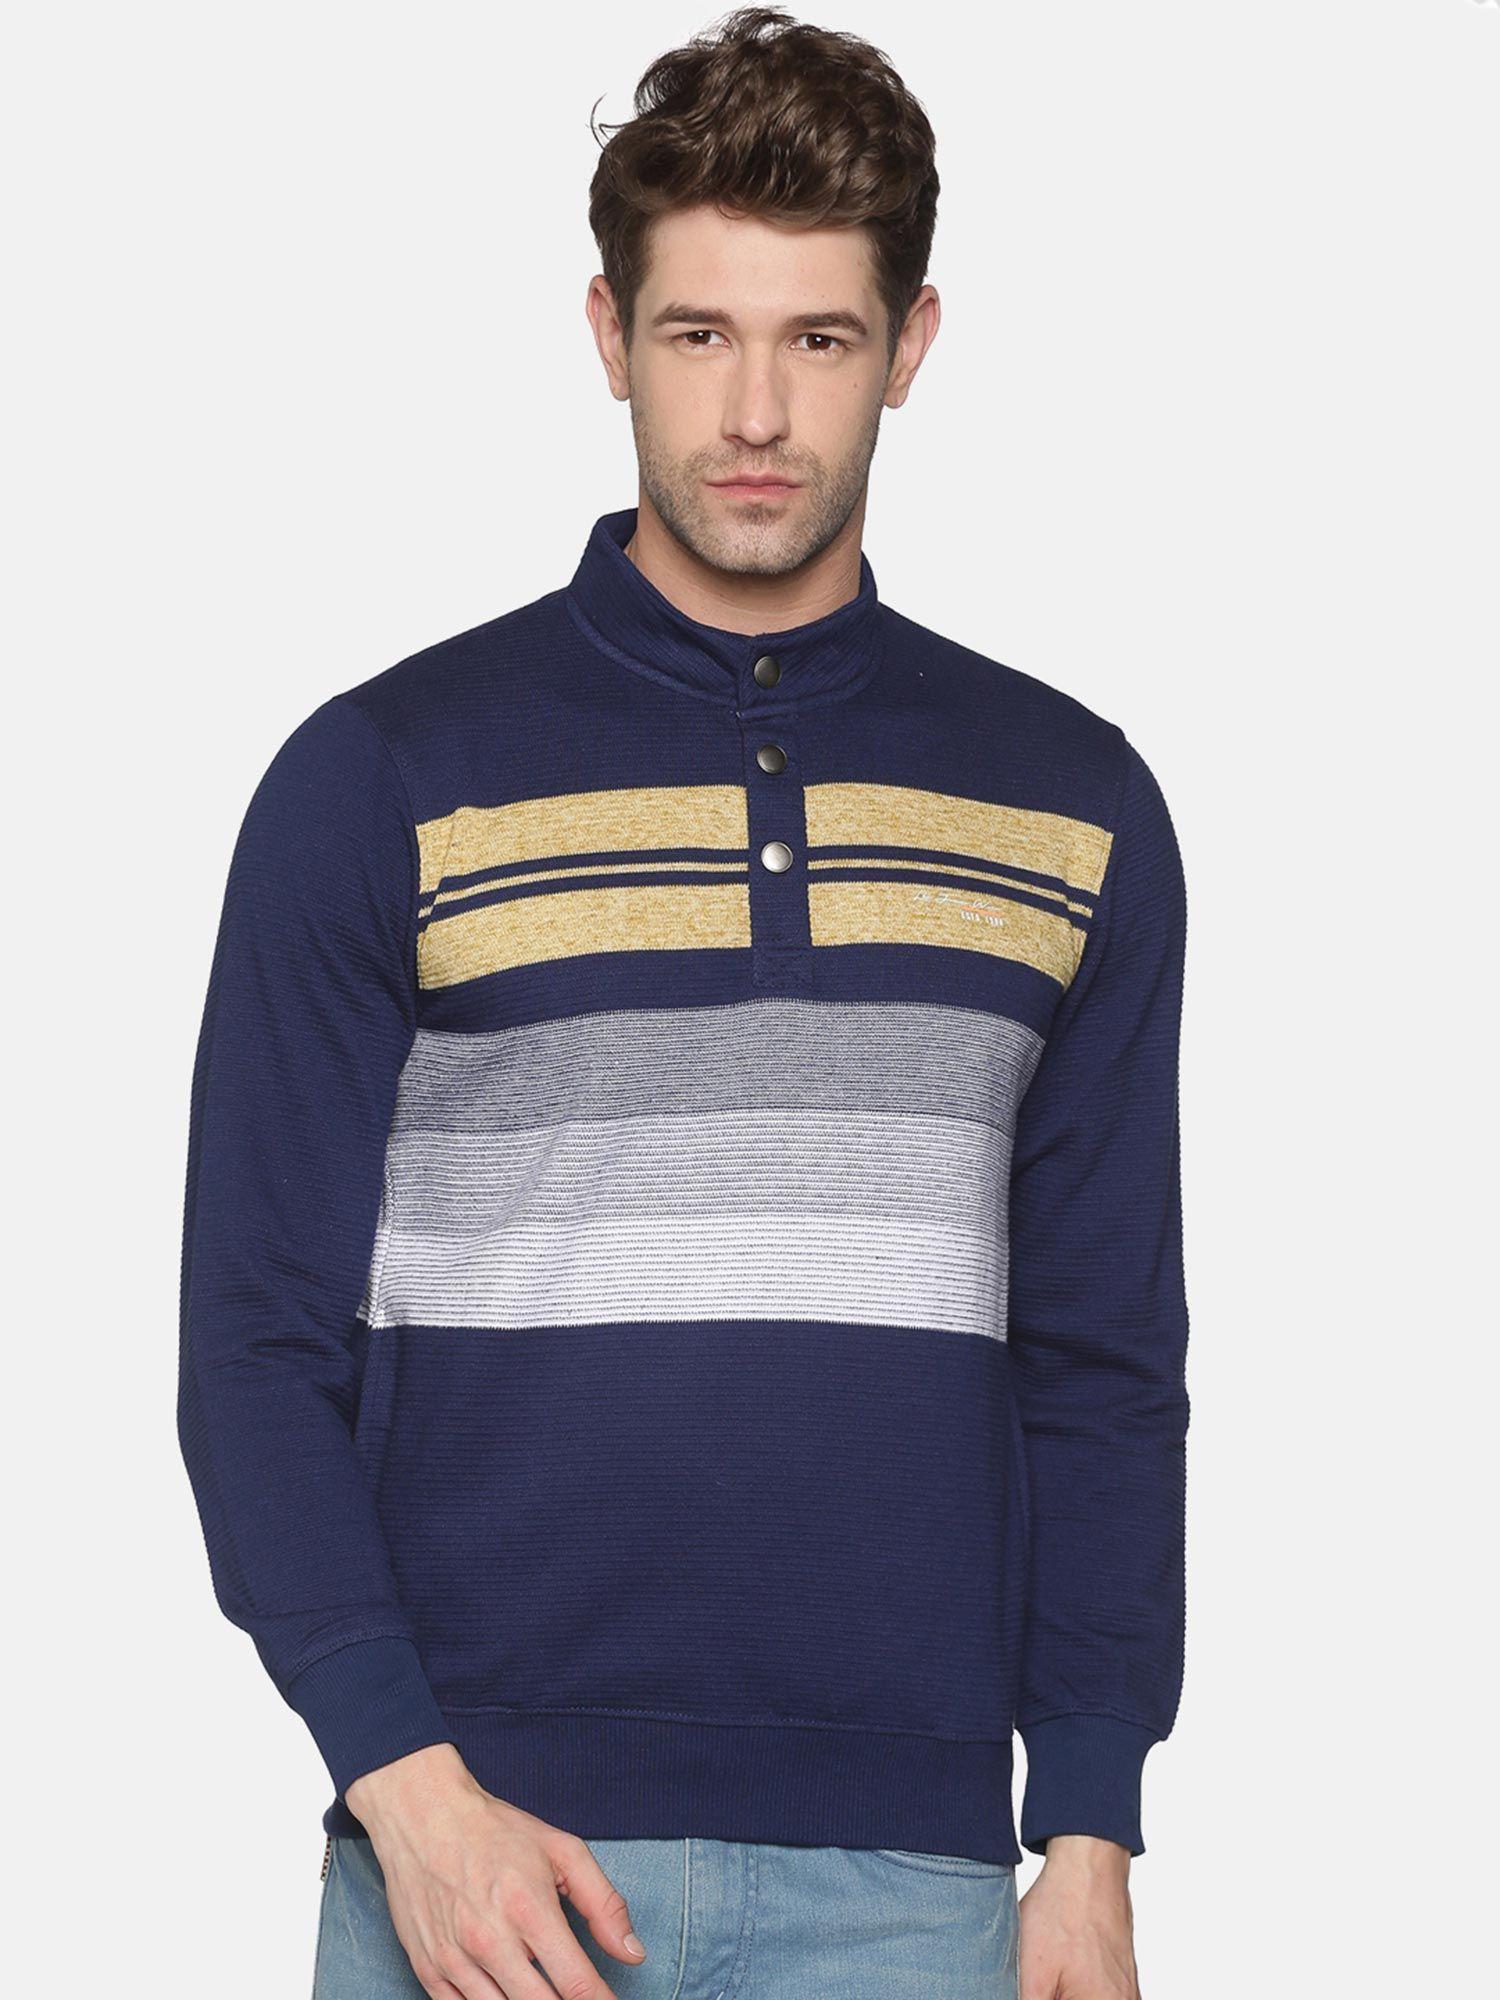 Men's Cotton Casual Navy Sweatshirt